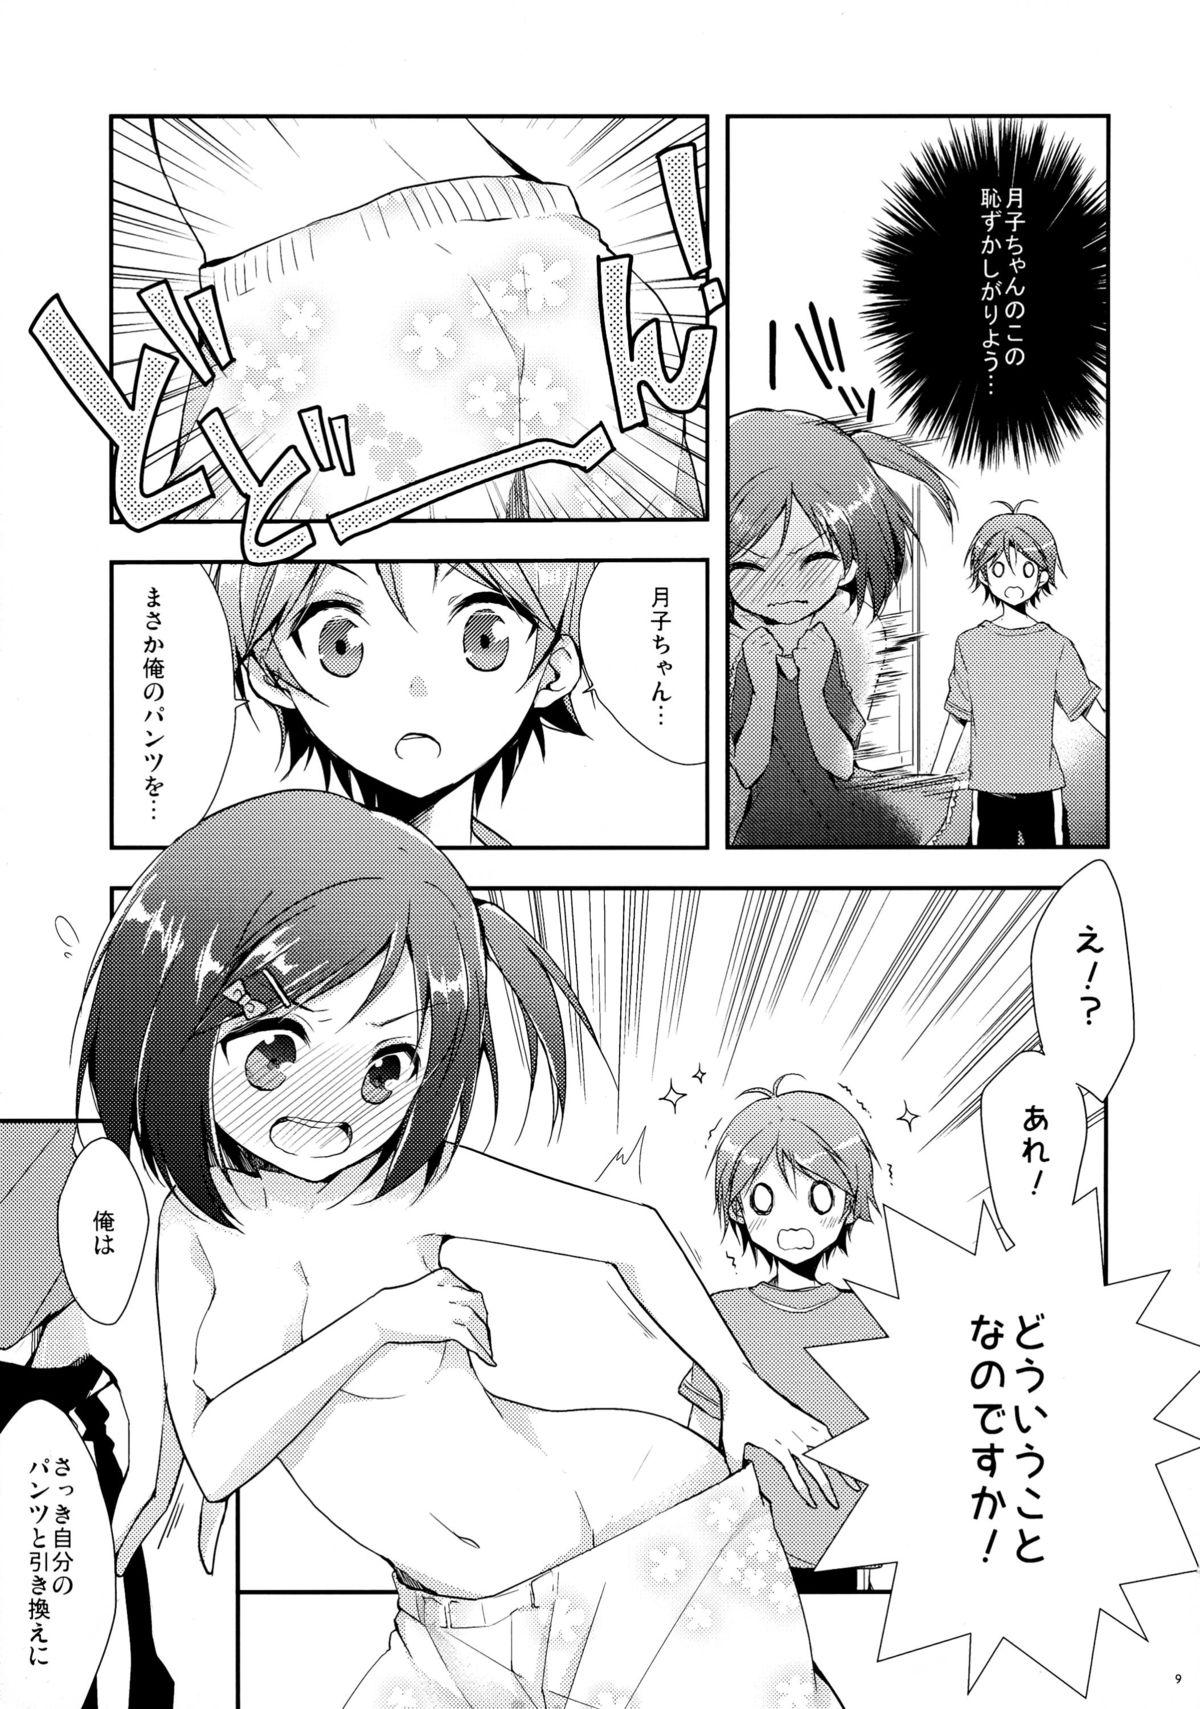 Tiny Tits Hentai Ouji to Hazukashii Neko. - Hentai ouji to warawanai neko Cuzinho - Page 9